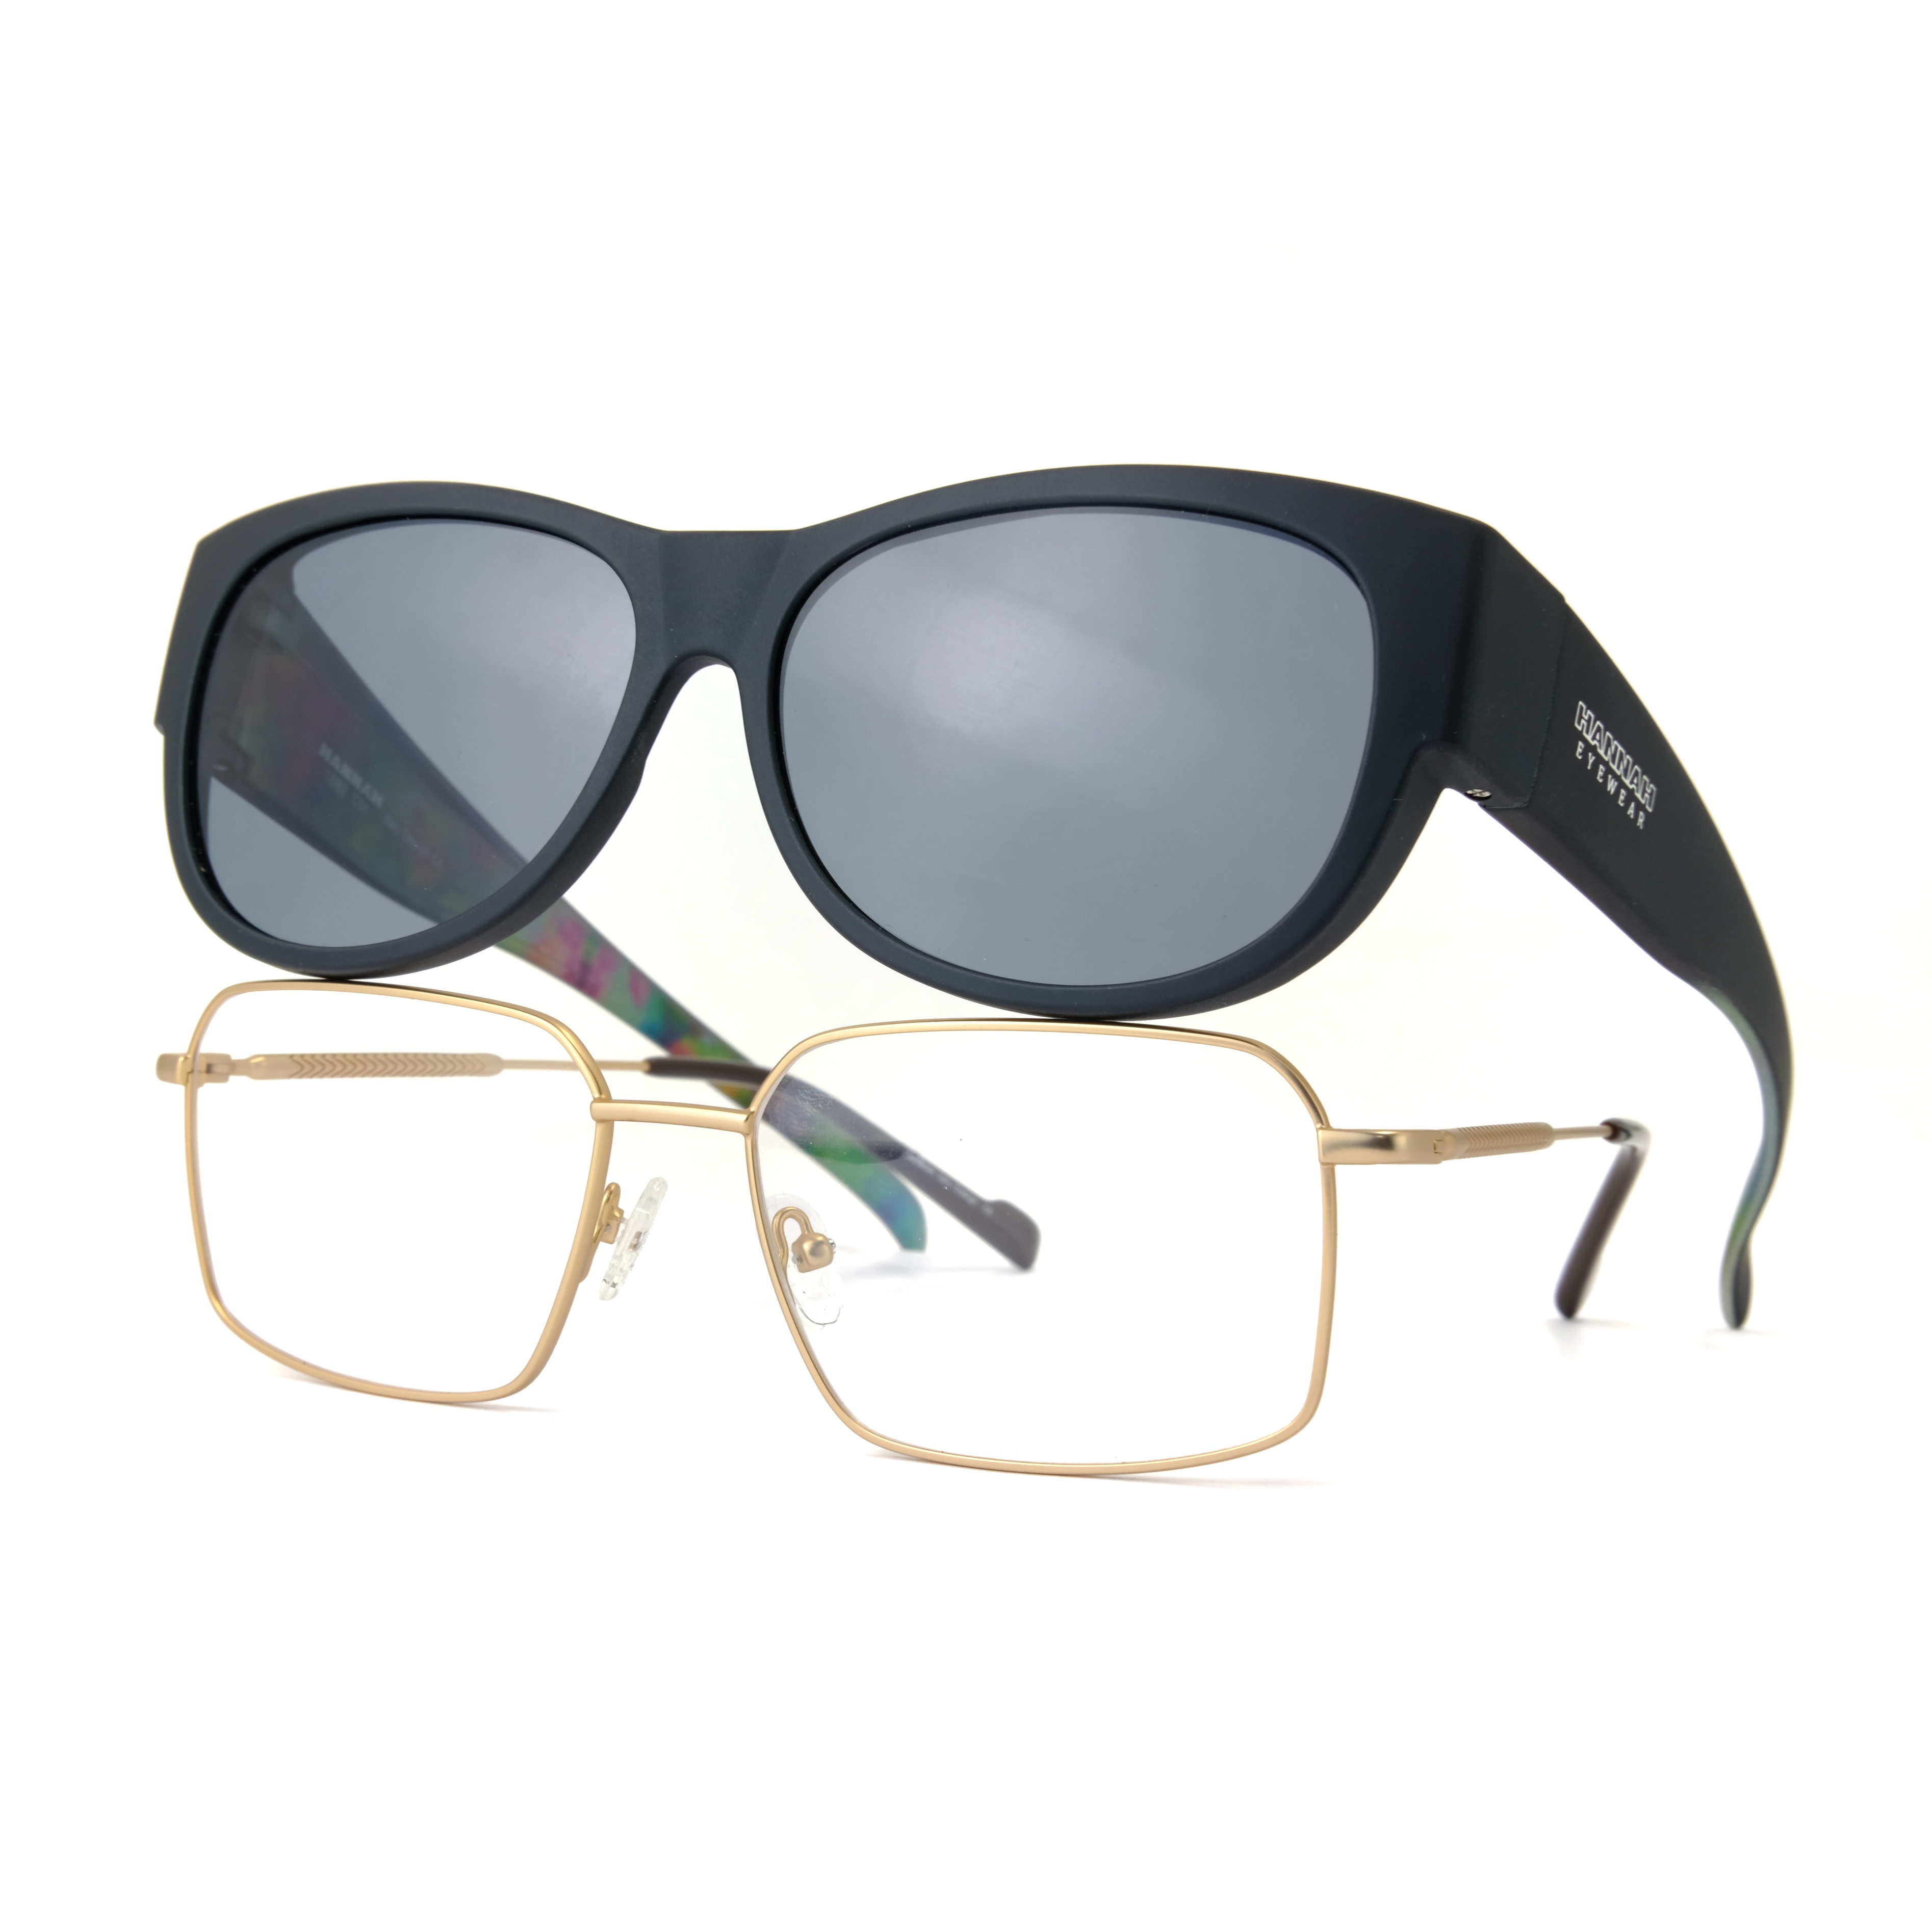 Gafas de sol de ajuste personalizado para montar en el río, gafas de sol de mujer Fitover, gafas de sol cuadradas de gran tamaño Unisex